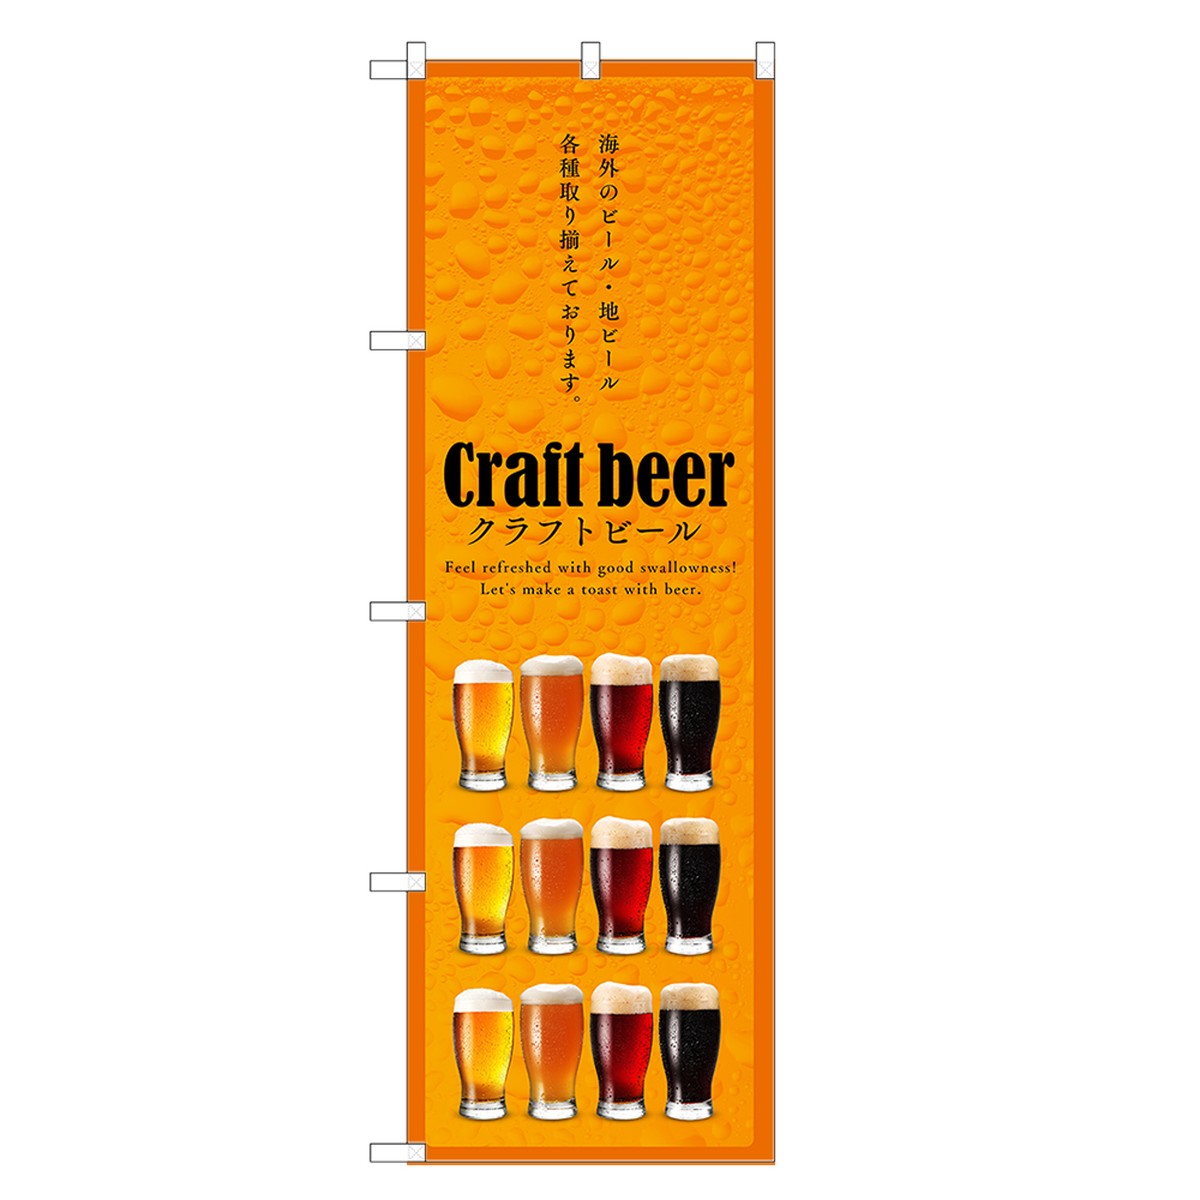 最高の品質の ビール のぼり旗 - その他 - alrc.asia